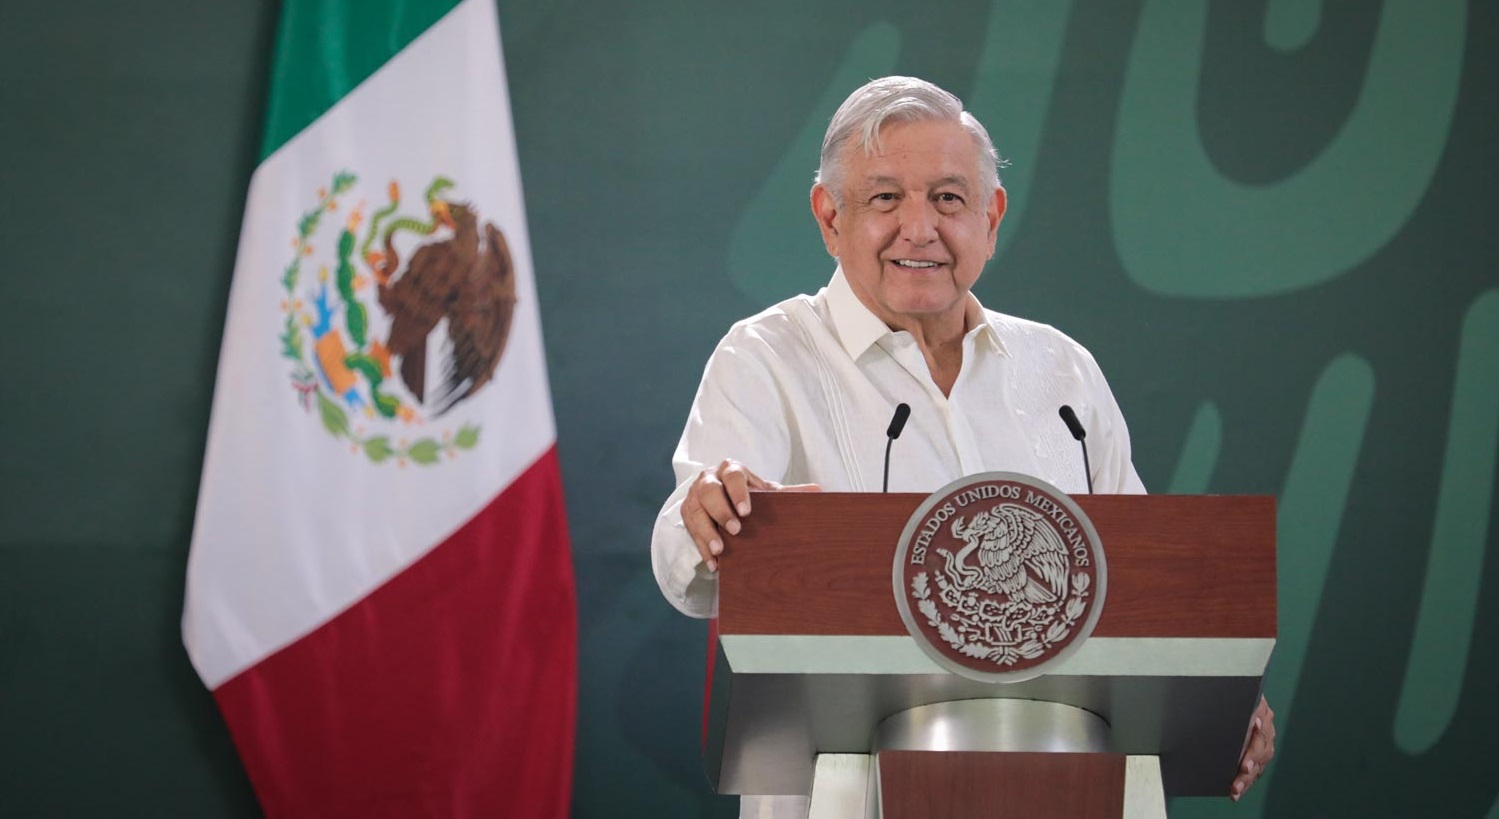 Si se quiere ayudar a Cuba lo primero es suspender bloqueo afirma Lopez Obrador